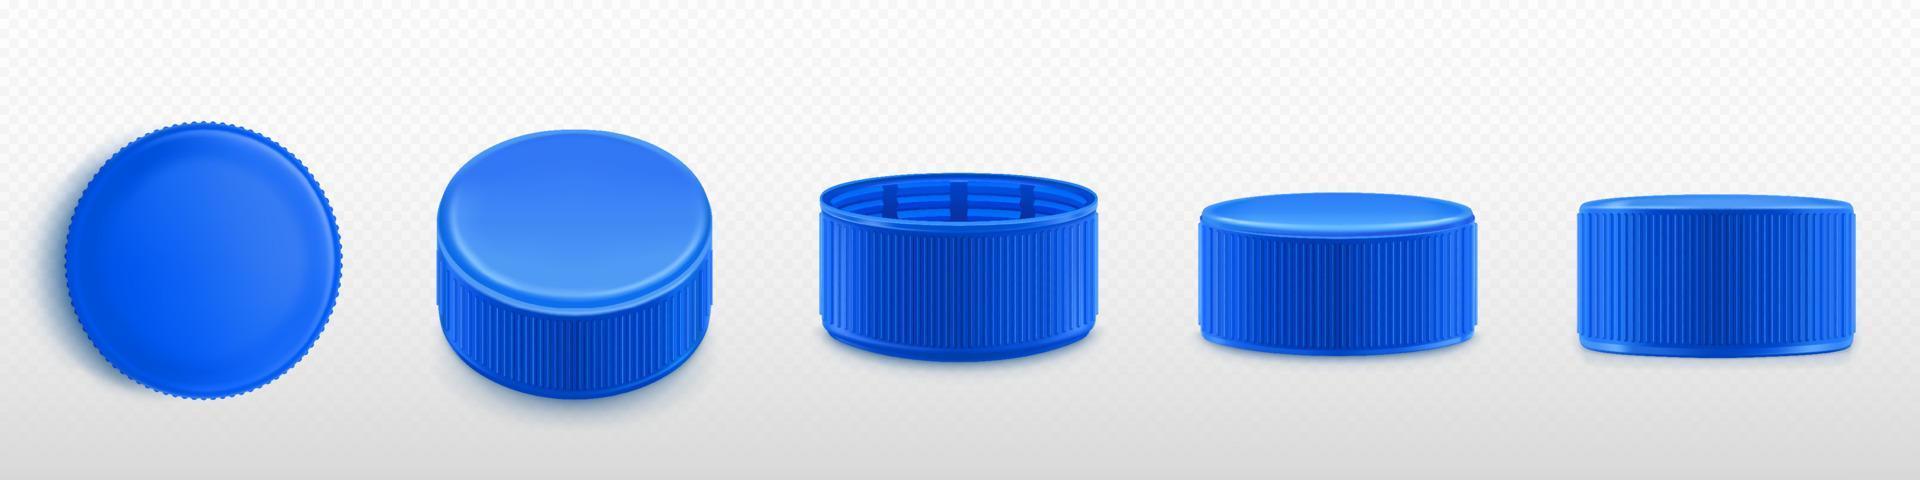 Blue plastic bottle caps png set on transparent vector